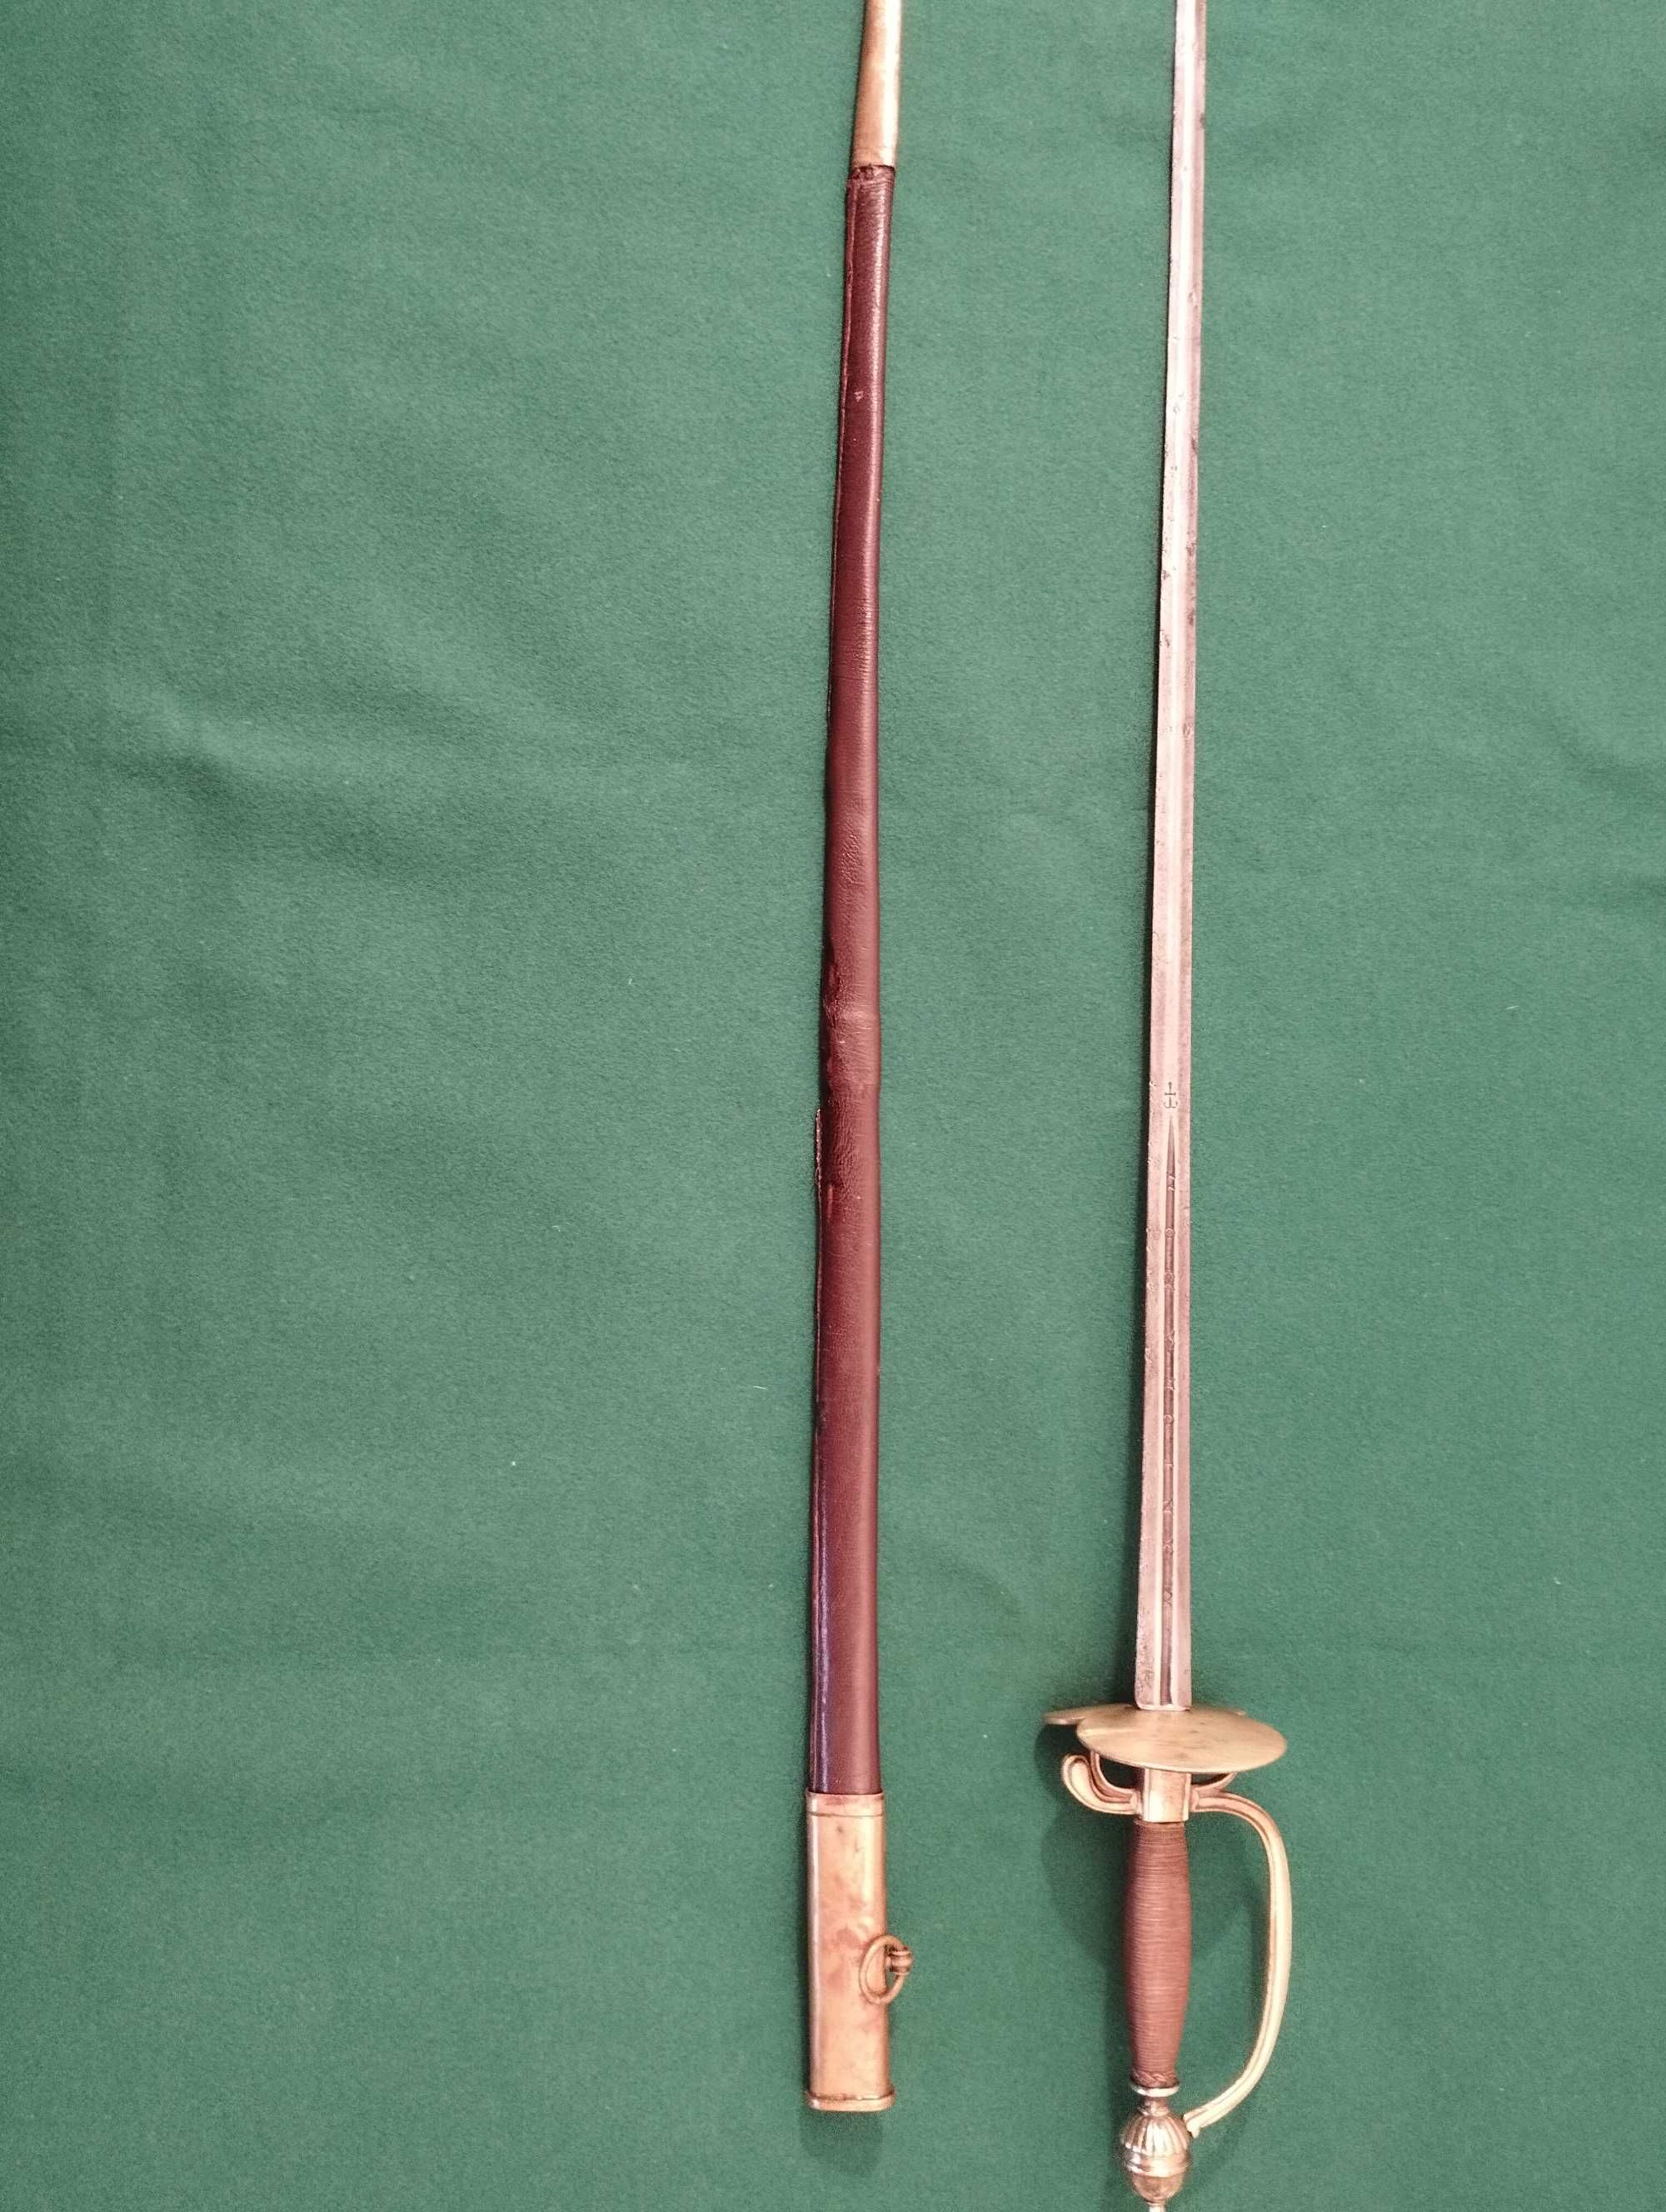 Espada de oficial português de acordo com o regulamento de 1806.